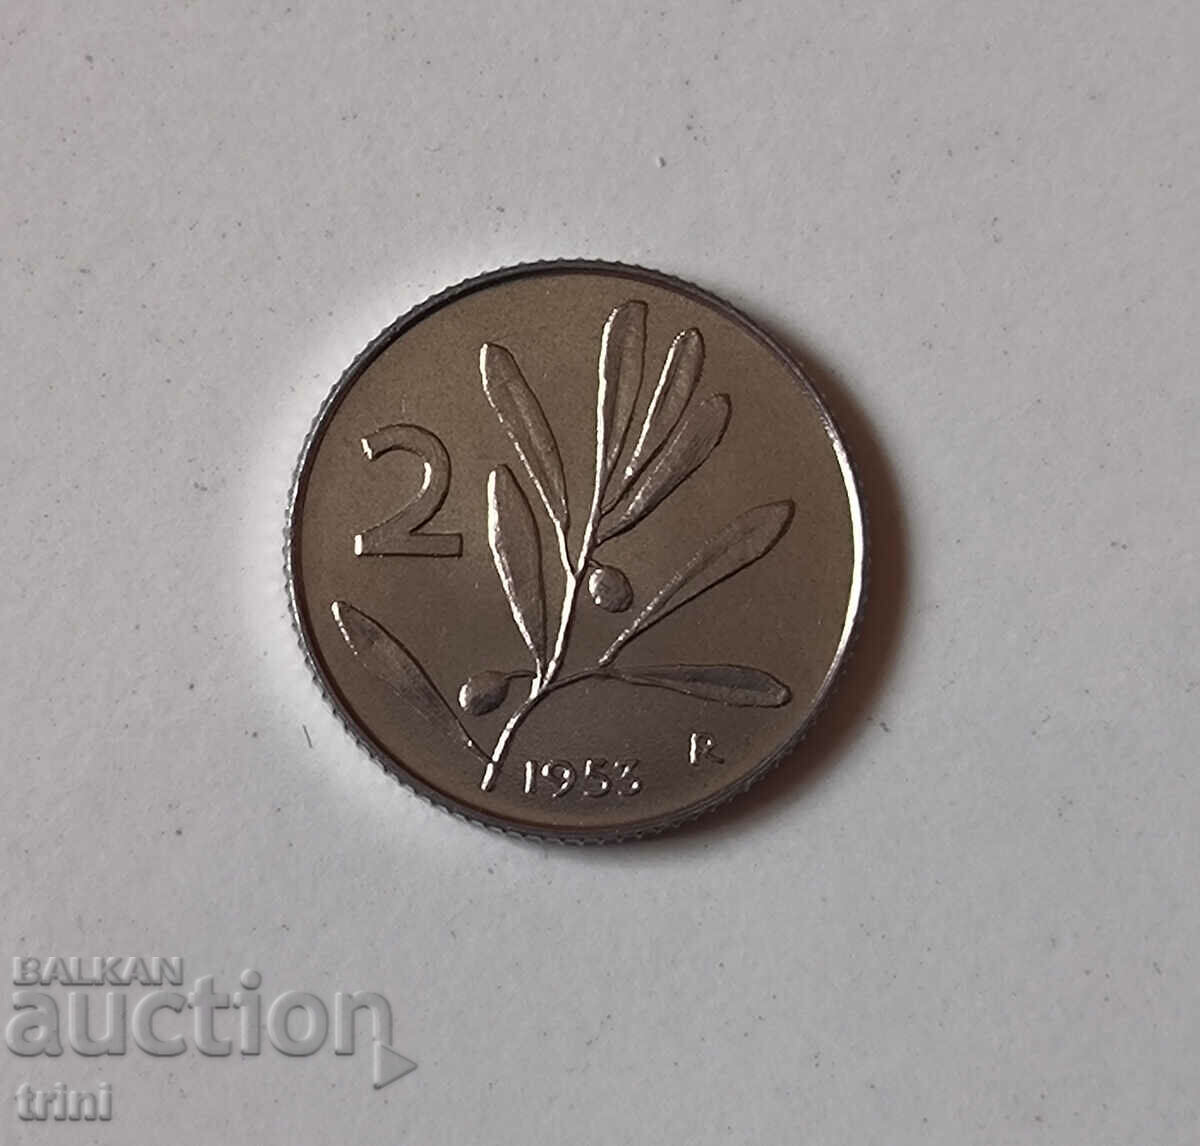 Ιταλία 2 λίρες 1953 έτος g102